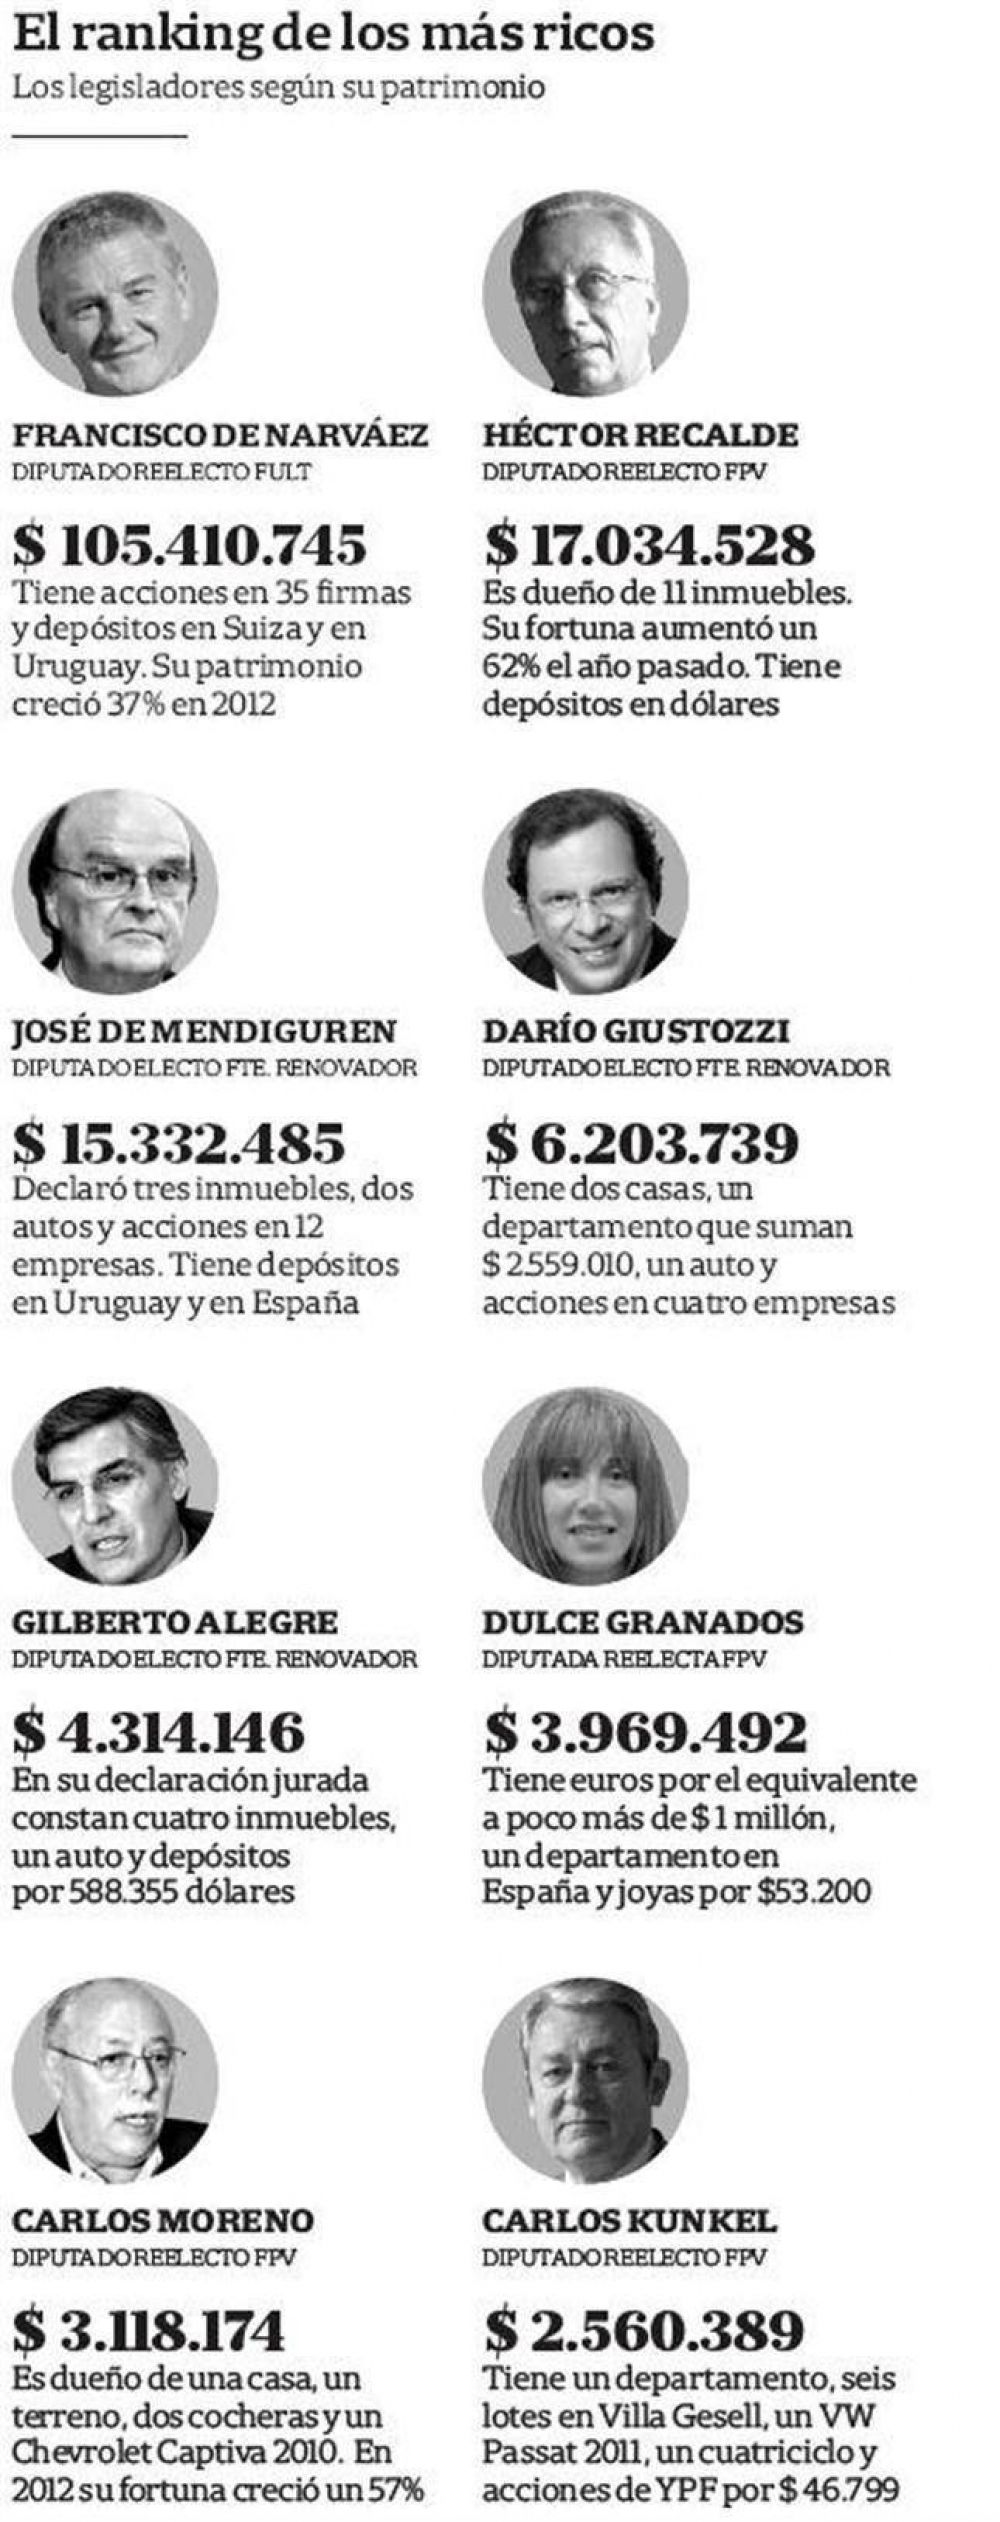 La lista de los diputados bonaerenses electos incluye a varios millonarios